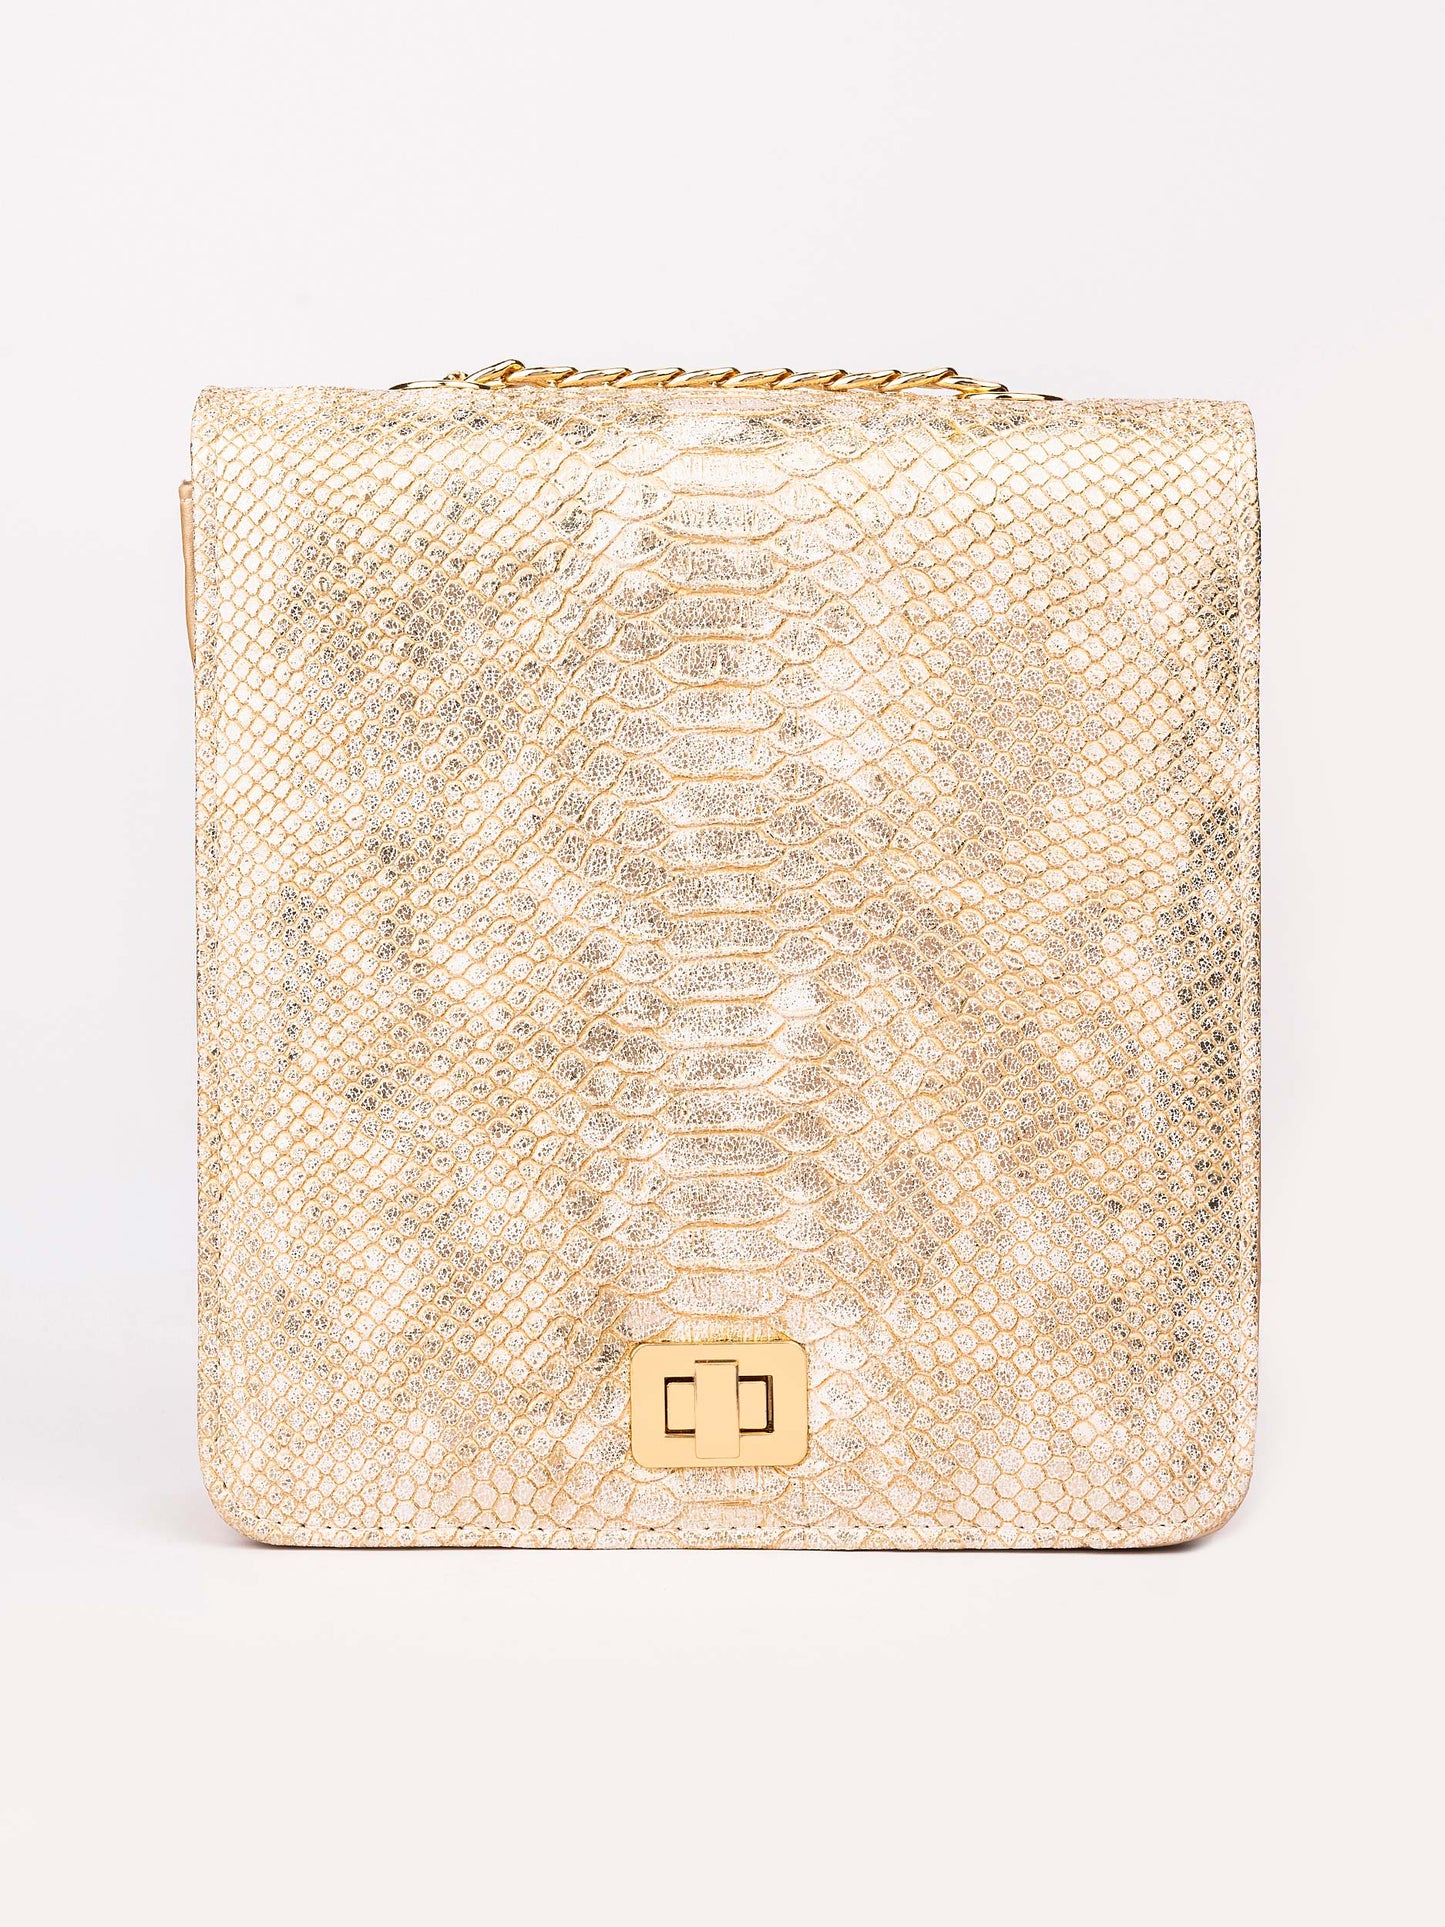 Snake Textured Handbag